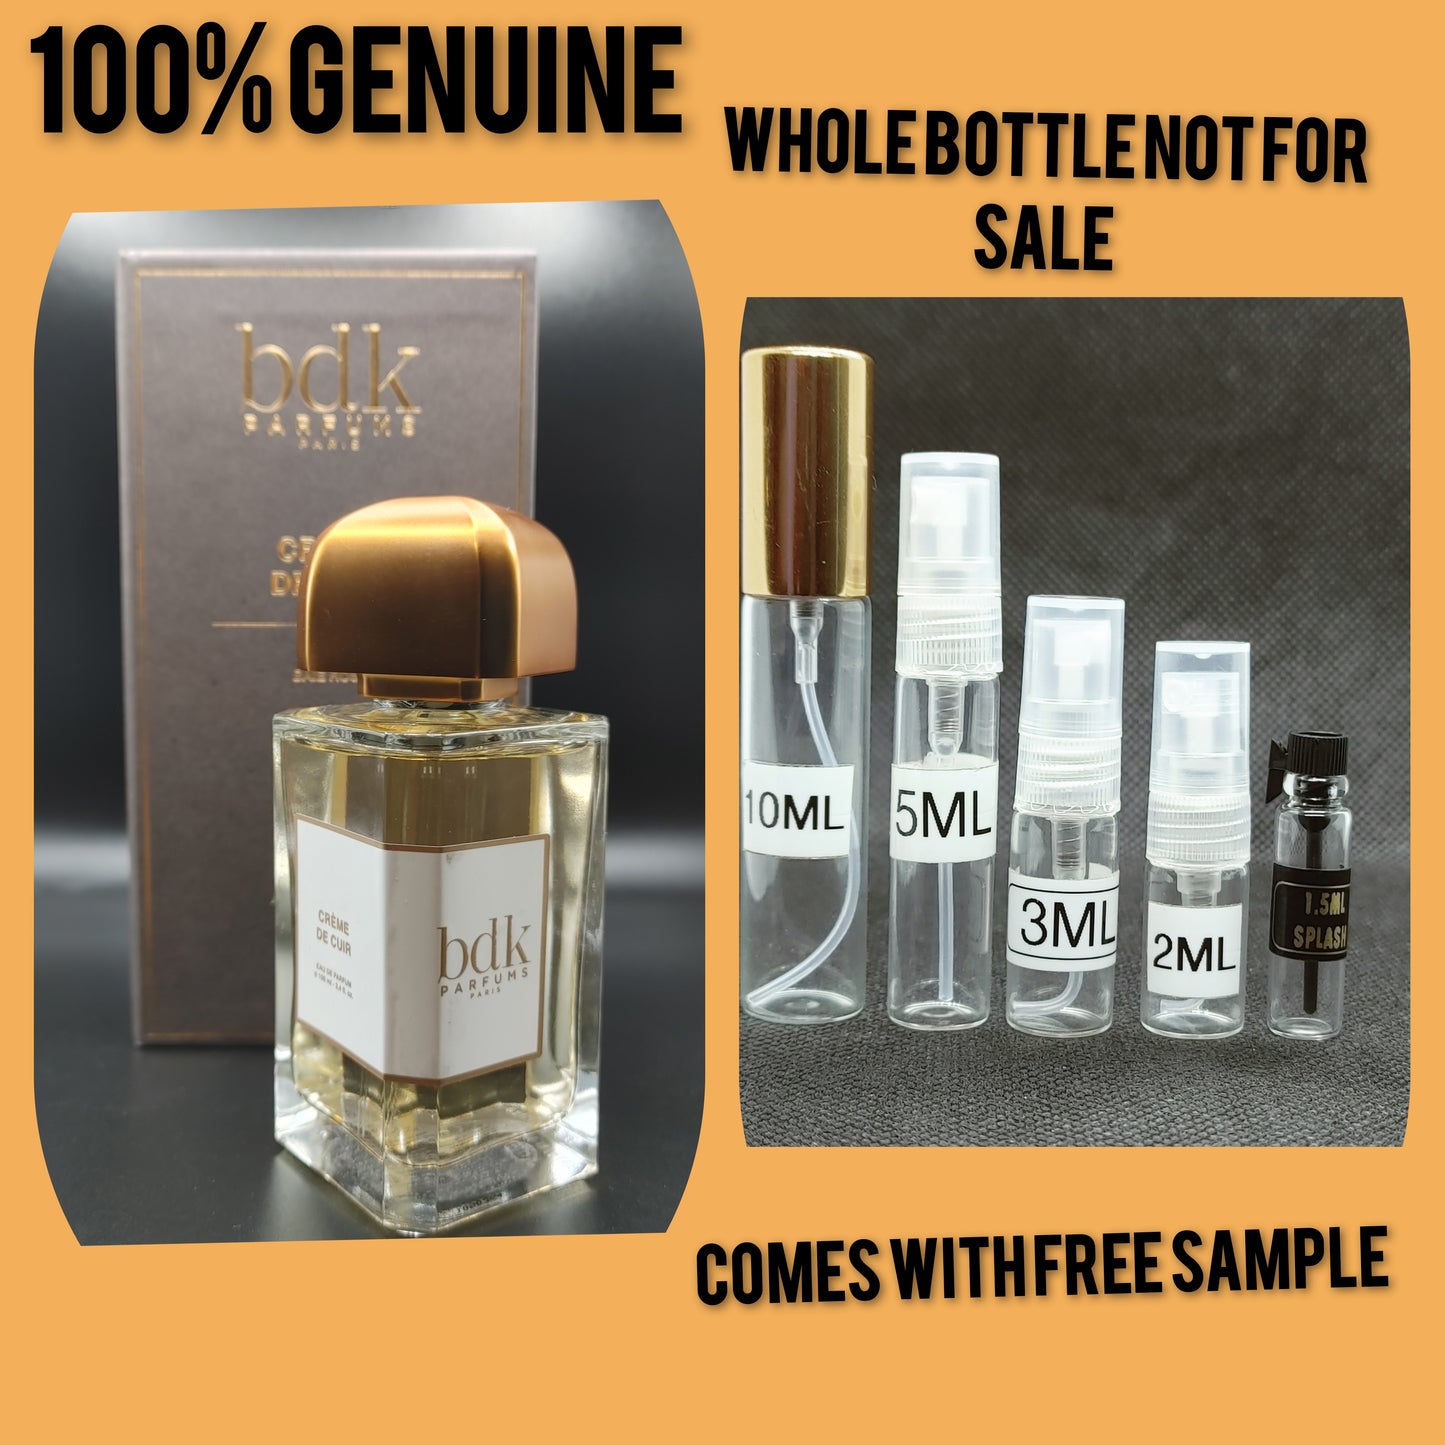 BDK Crème de Cuir  Parfums for women and men